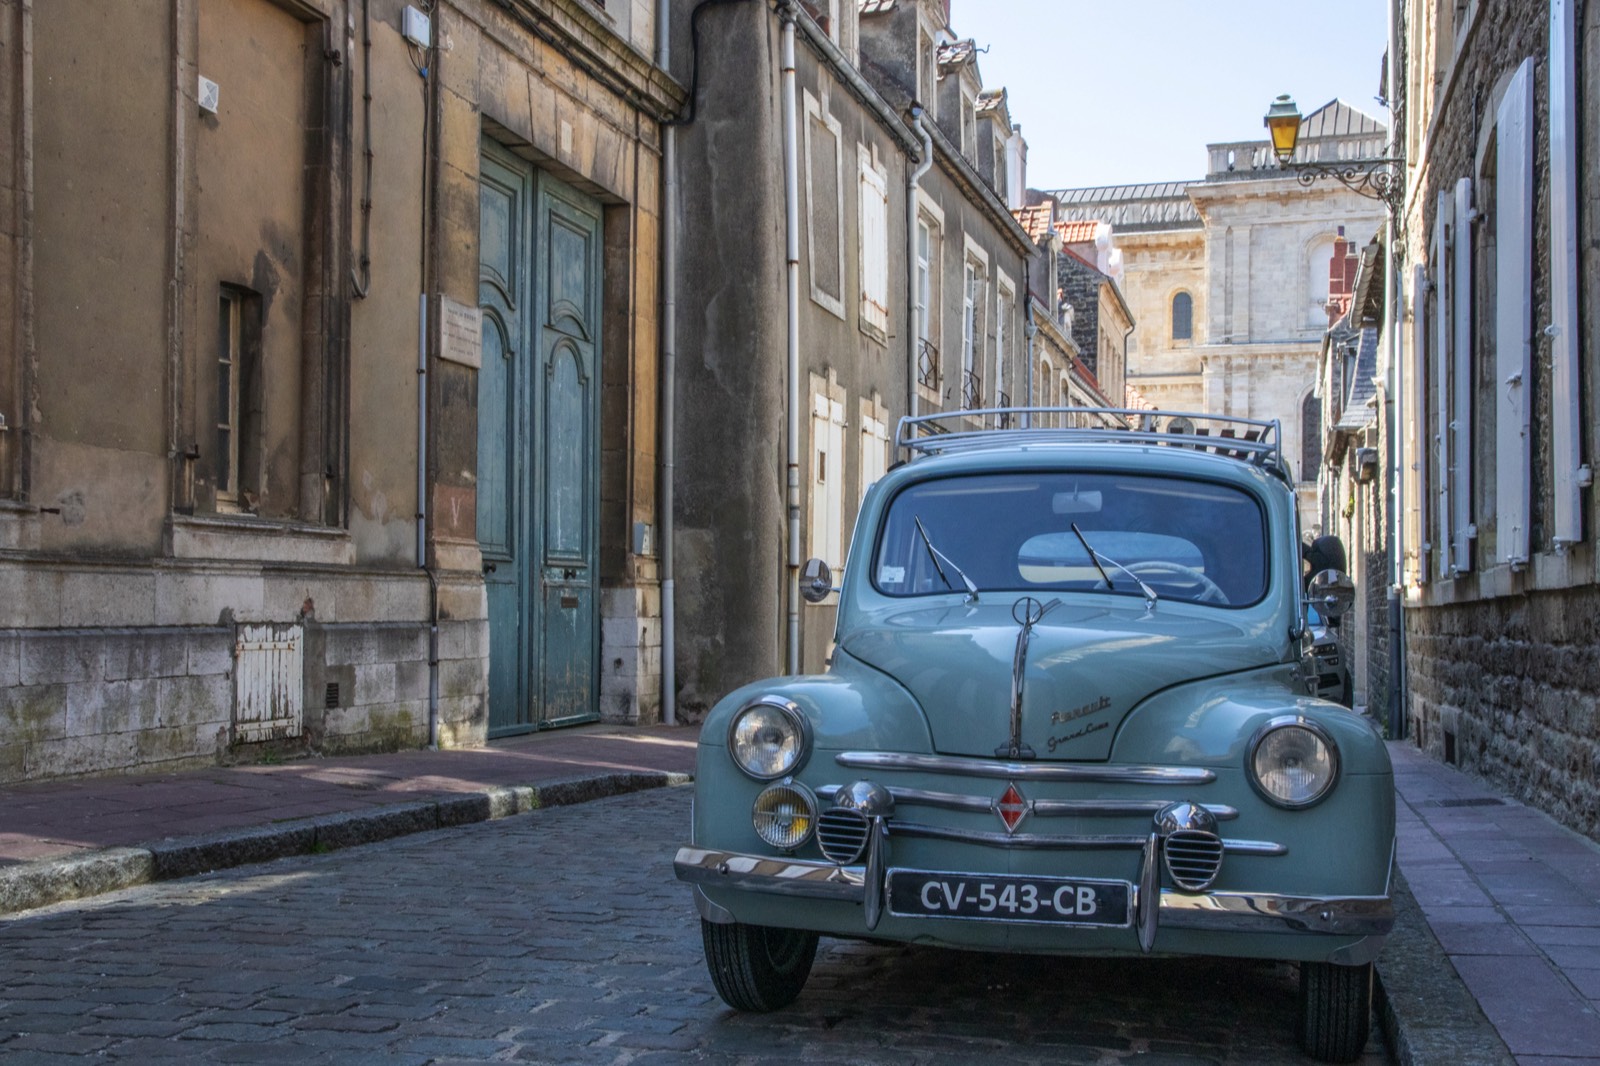 Old car in old street (Boulogne-sur-Mer)